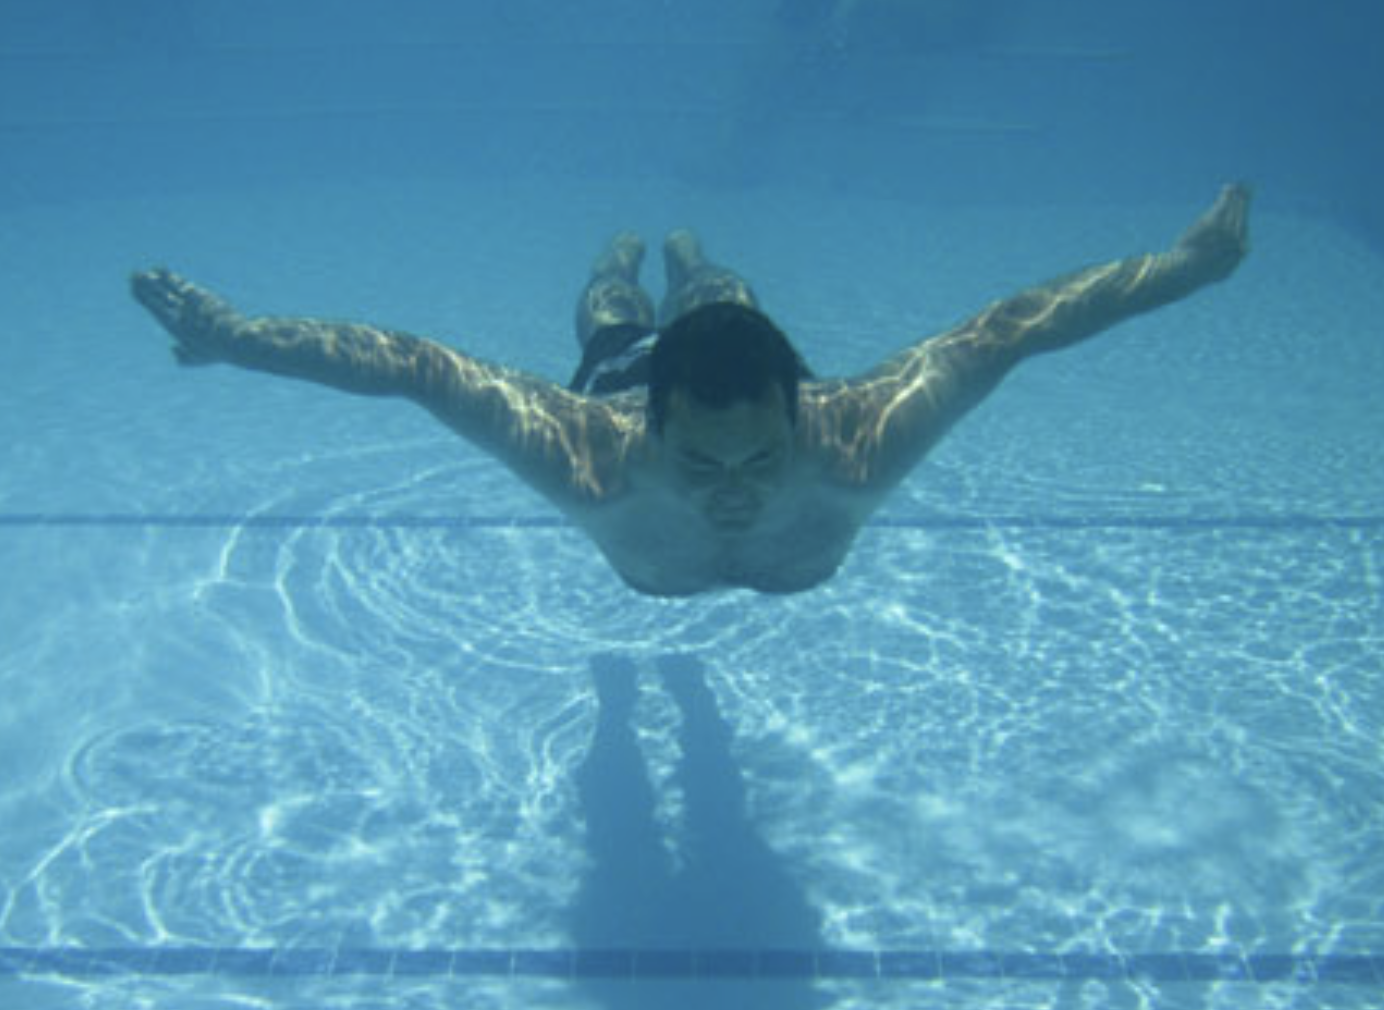 man swimming in pool